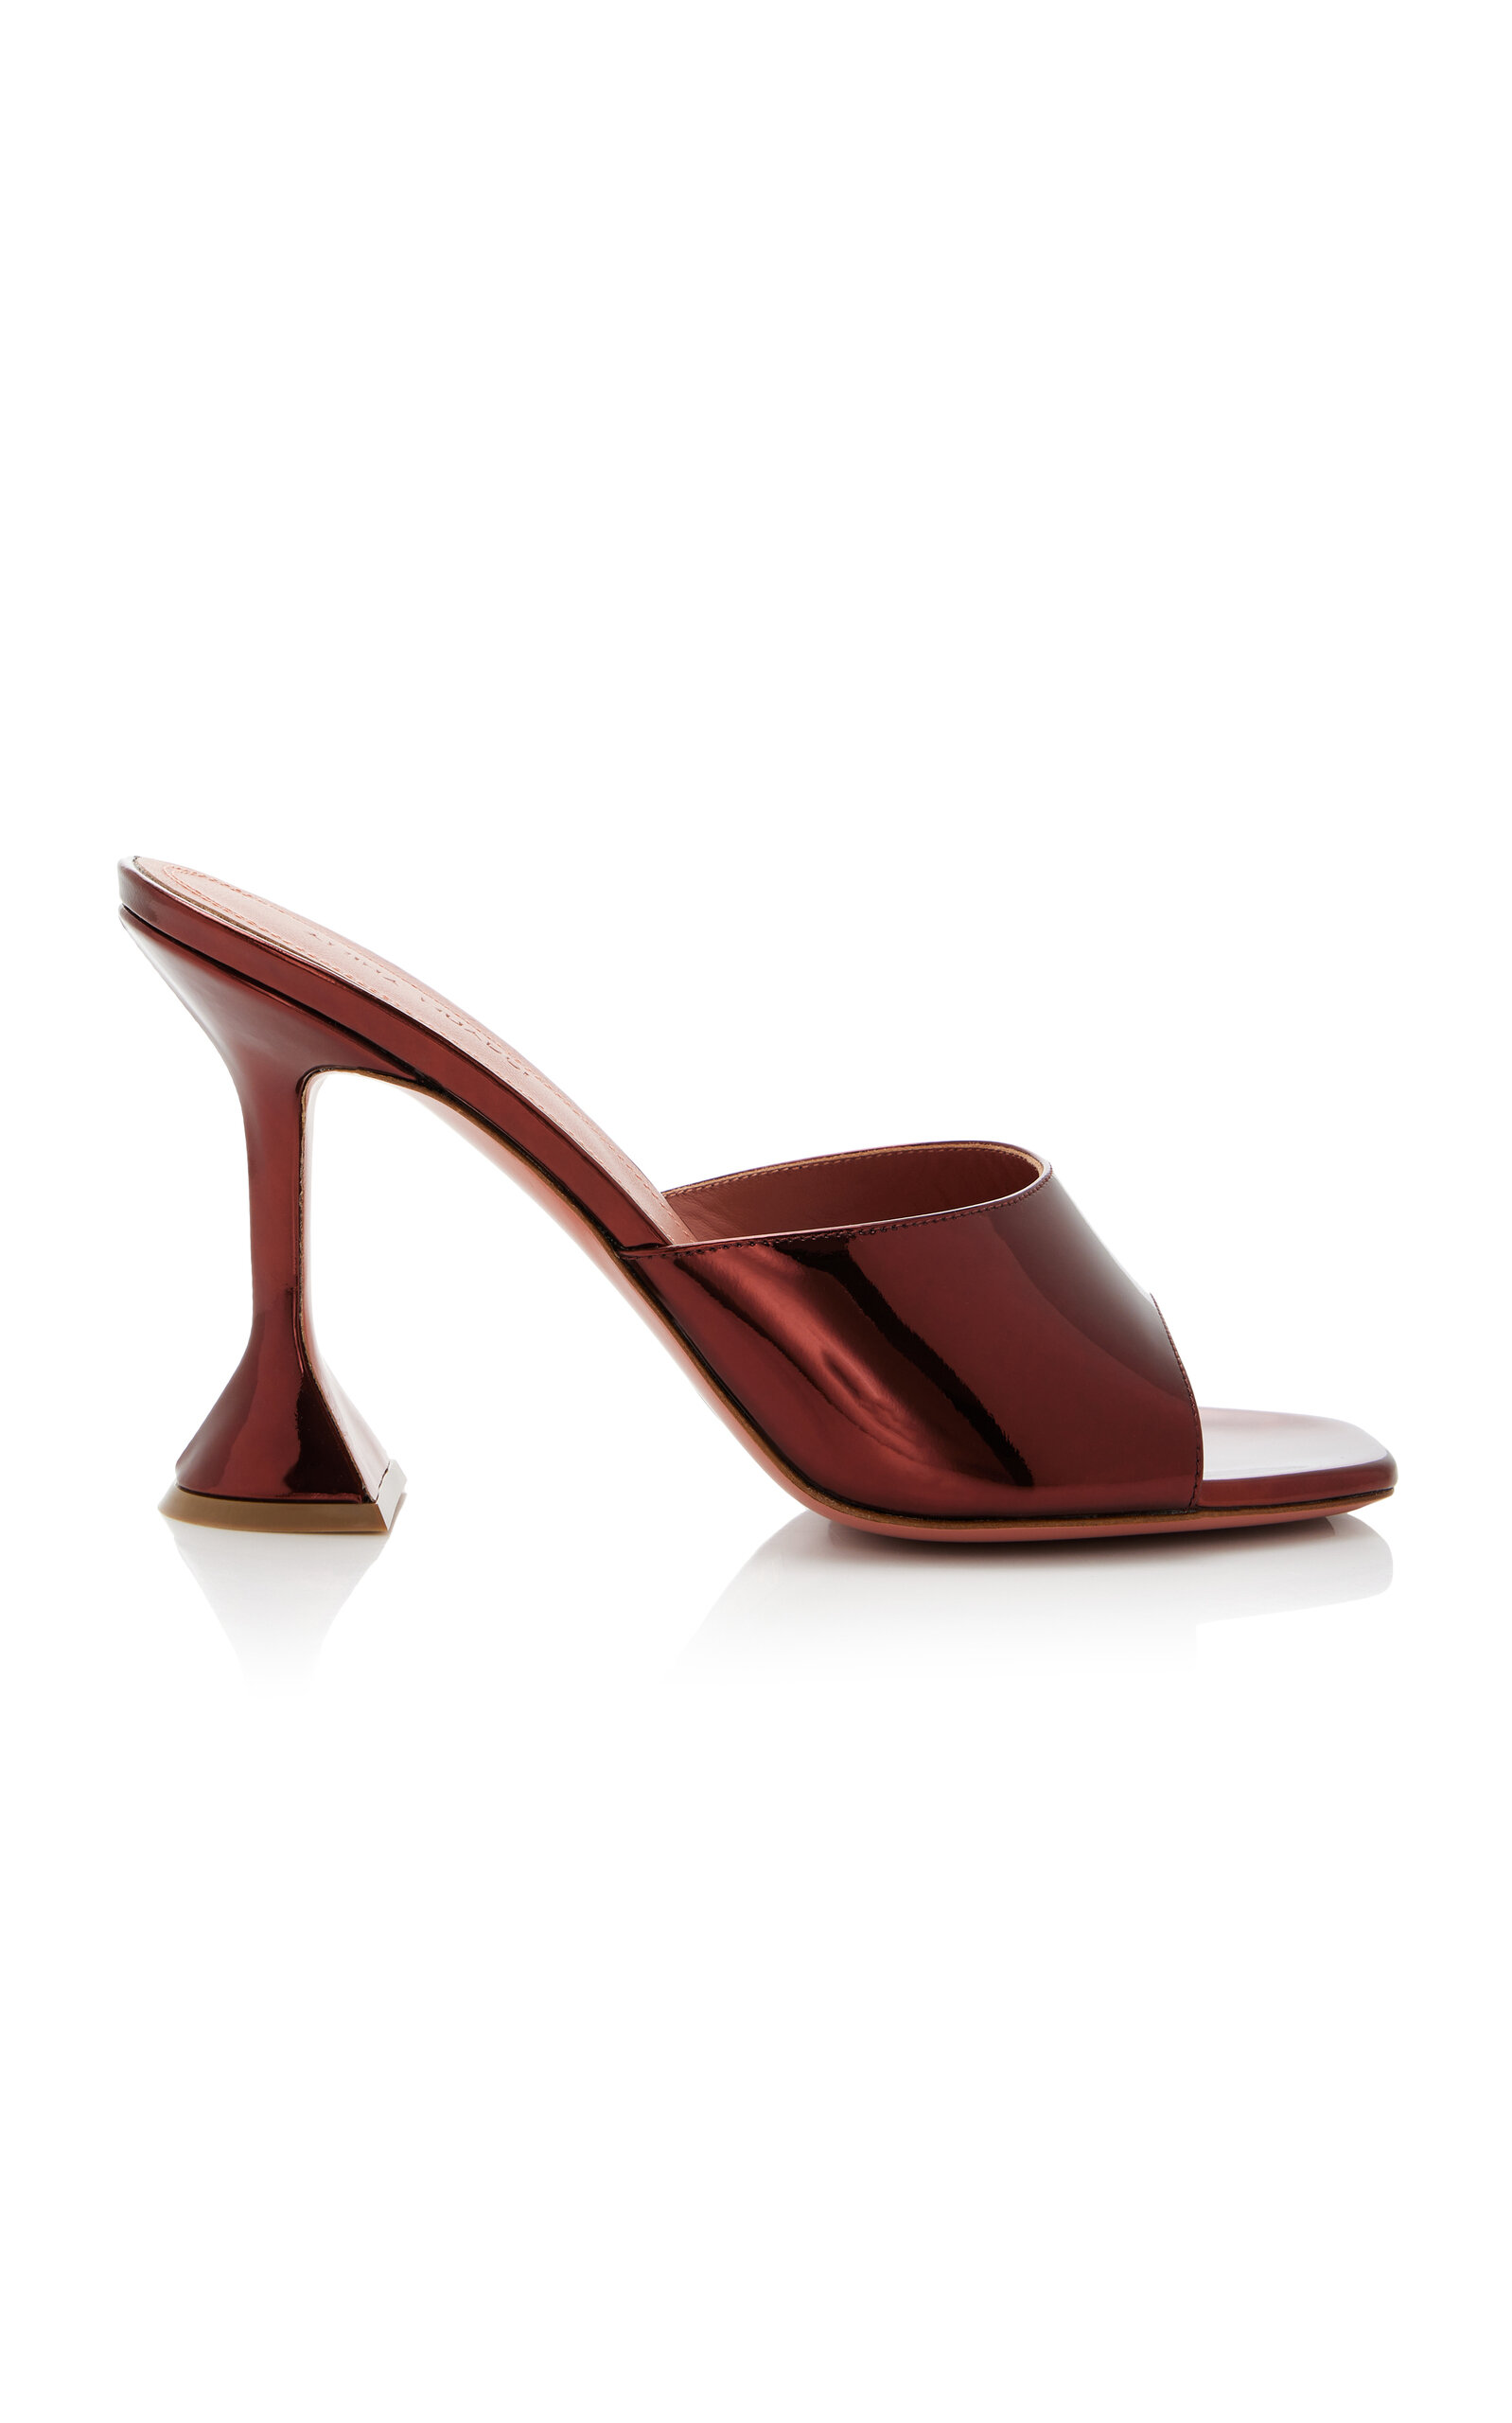 Amina Muaddi - Lupita Mirrored Leather Sandals - Brown - IT 37 - Moda Operandi